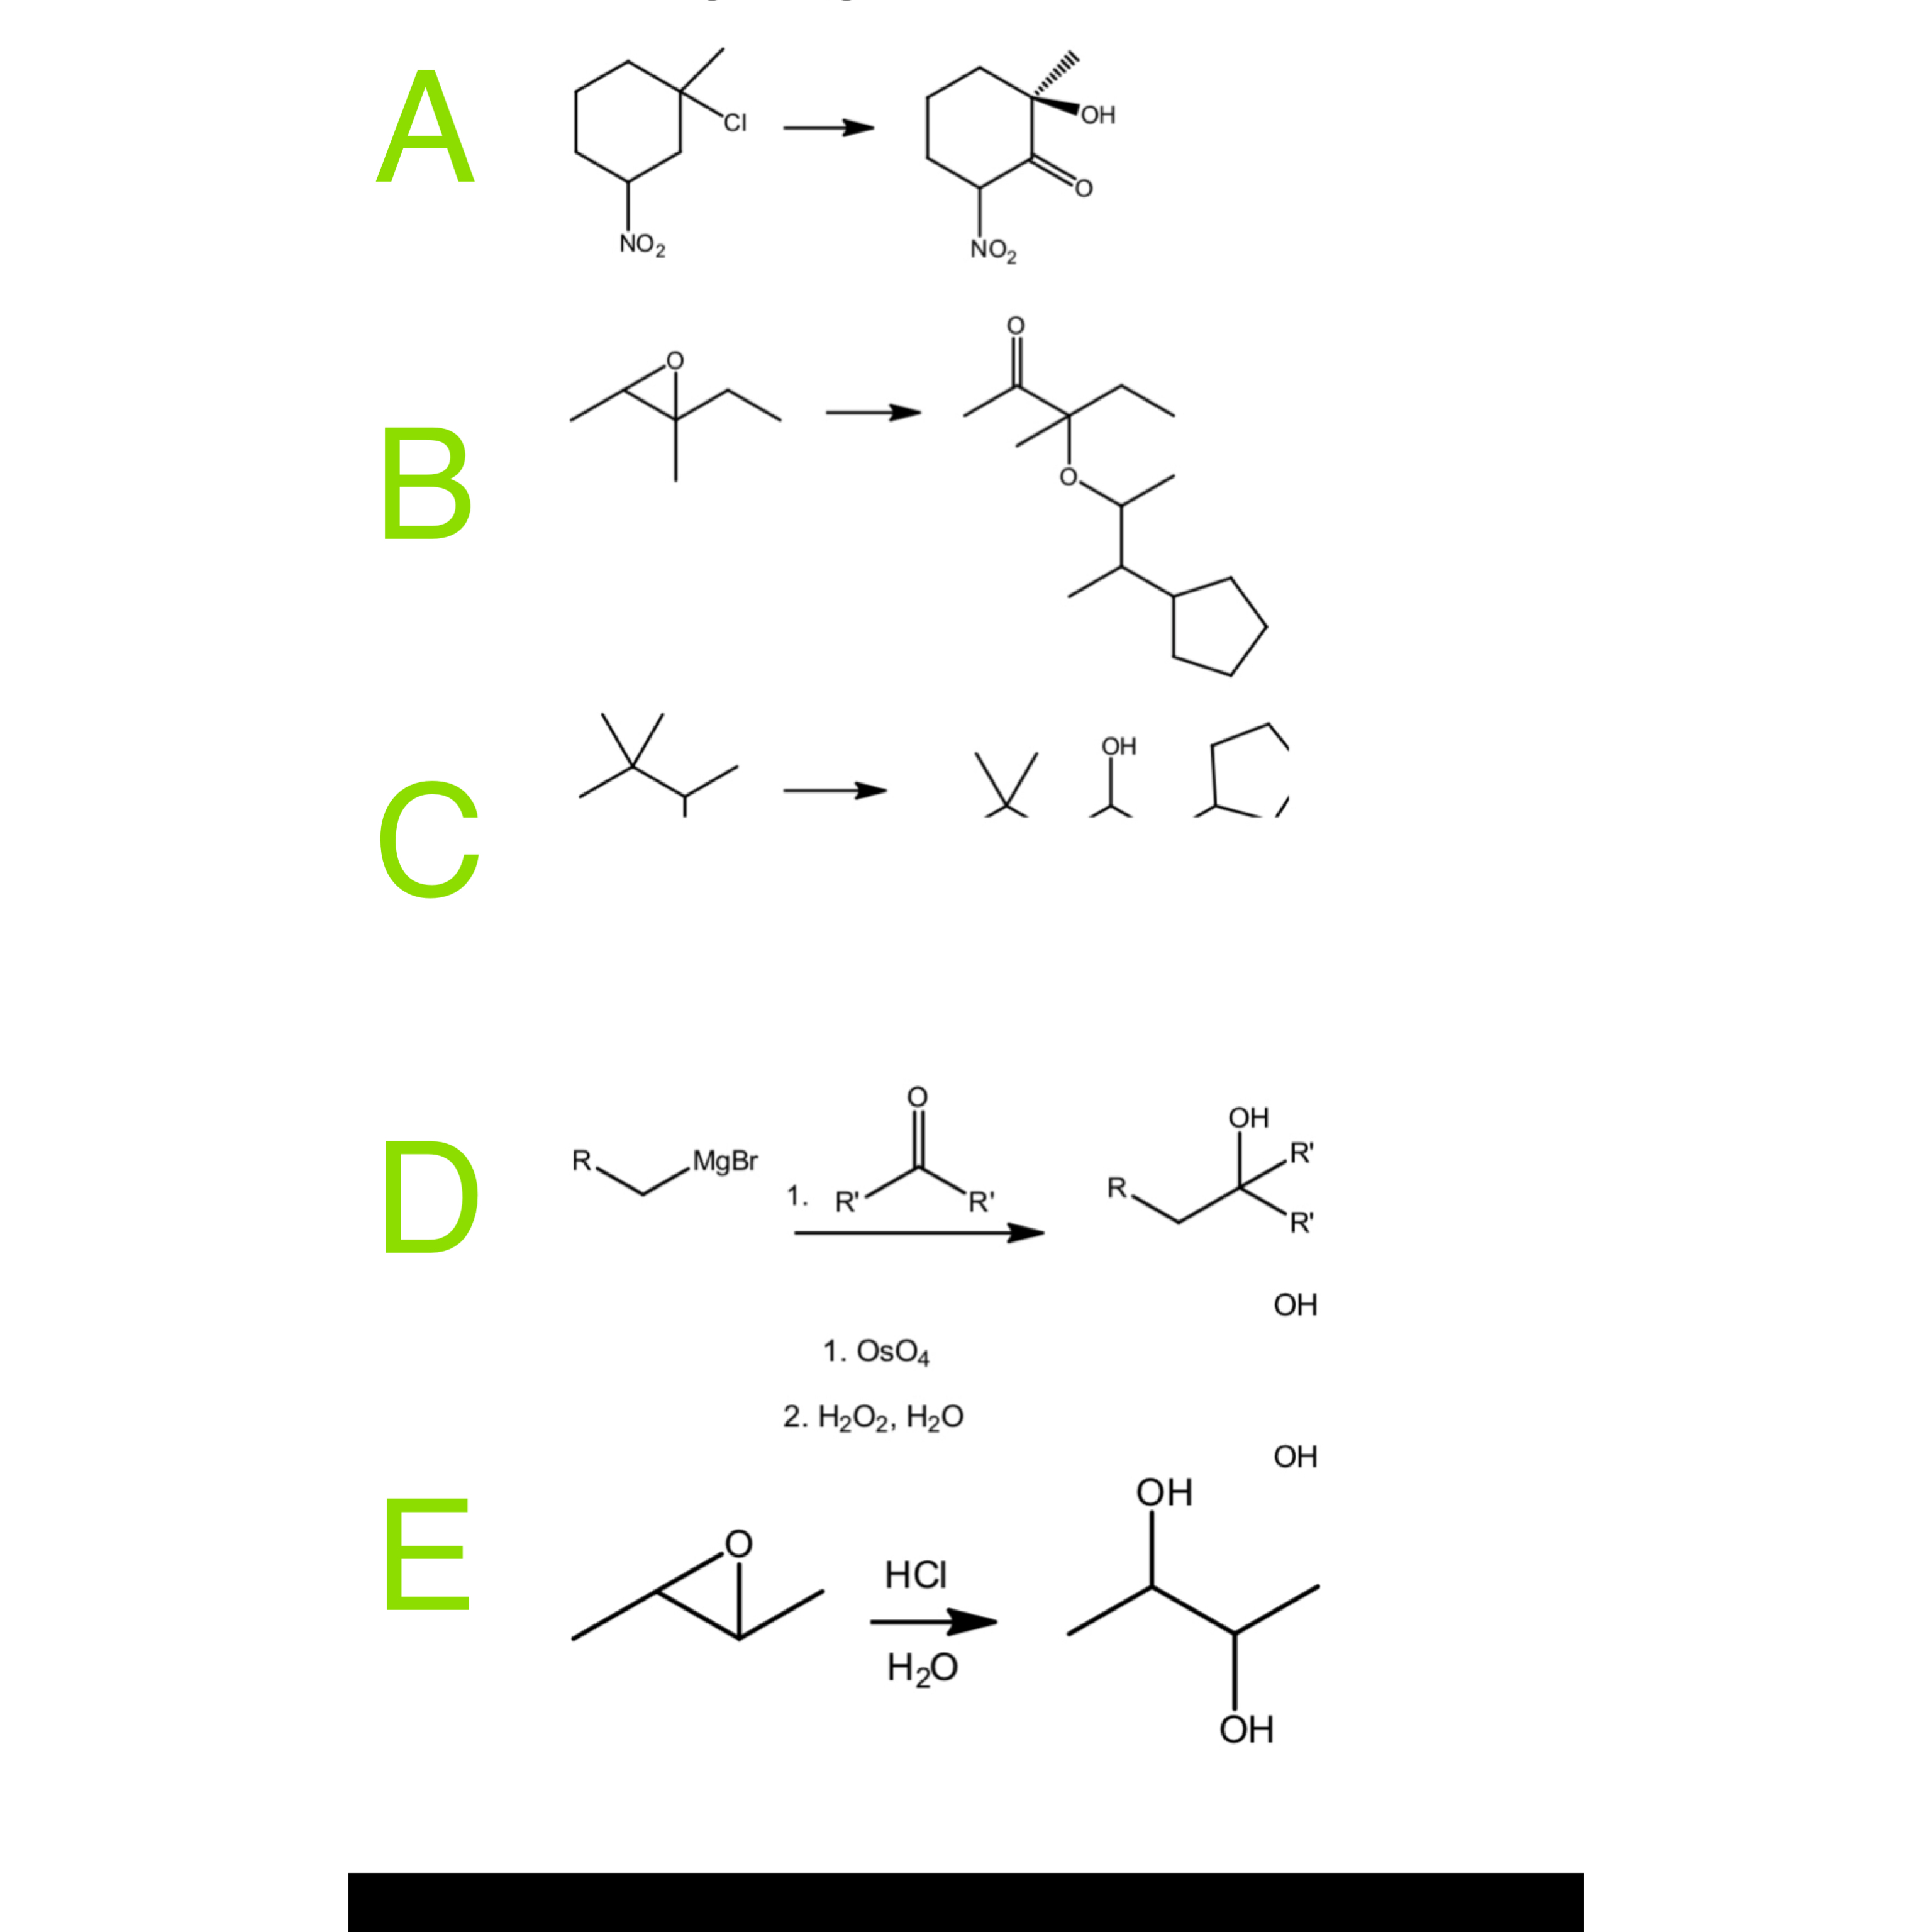 Ca h2o соединение. Mgbr2 химическая реакция. Формальдегид c3h7mgbr. Графическая формула mgbr2. Ch3mgbr с альдегидом.